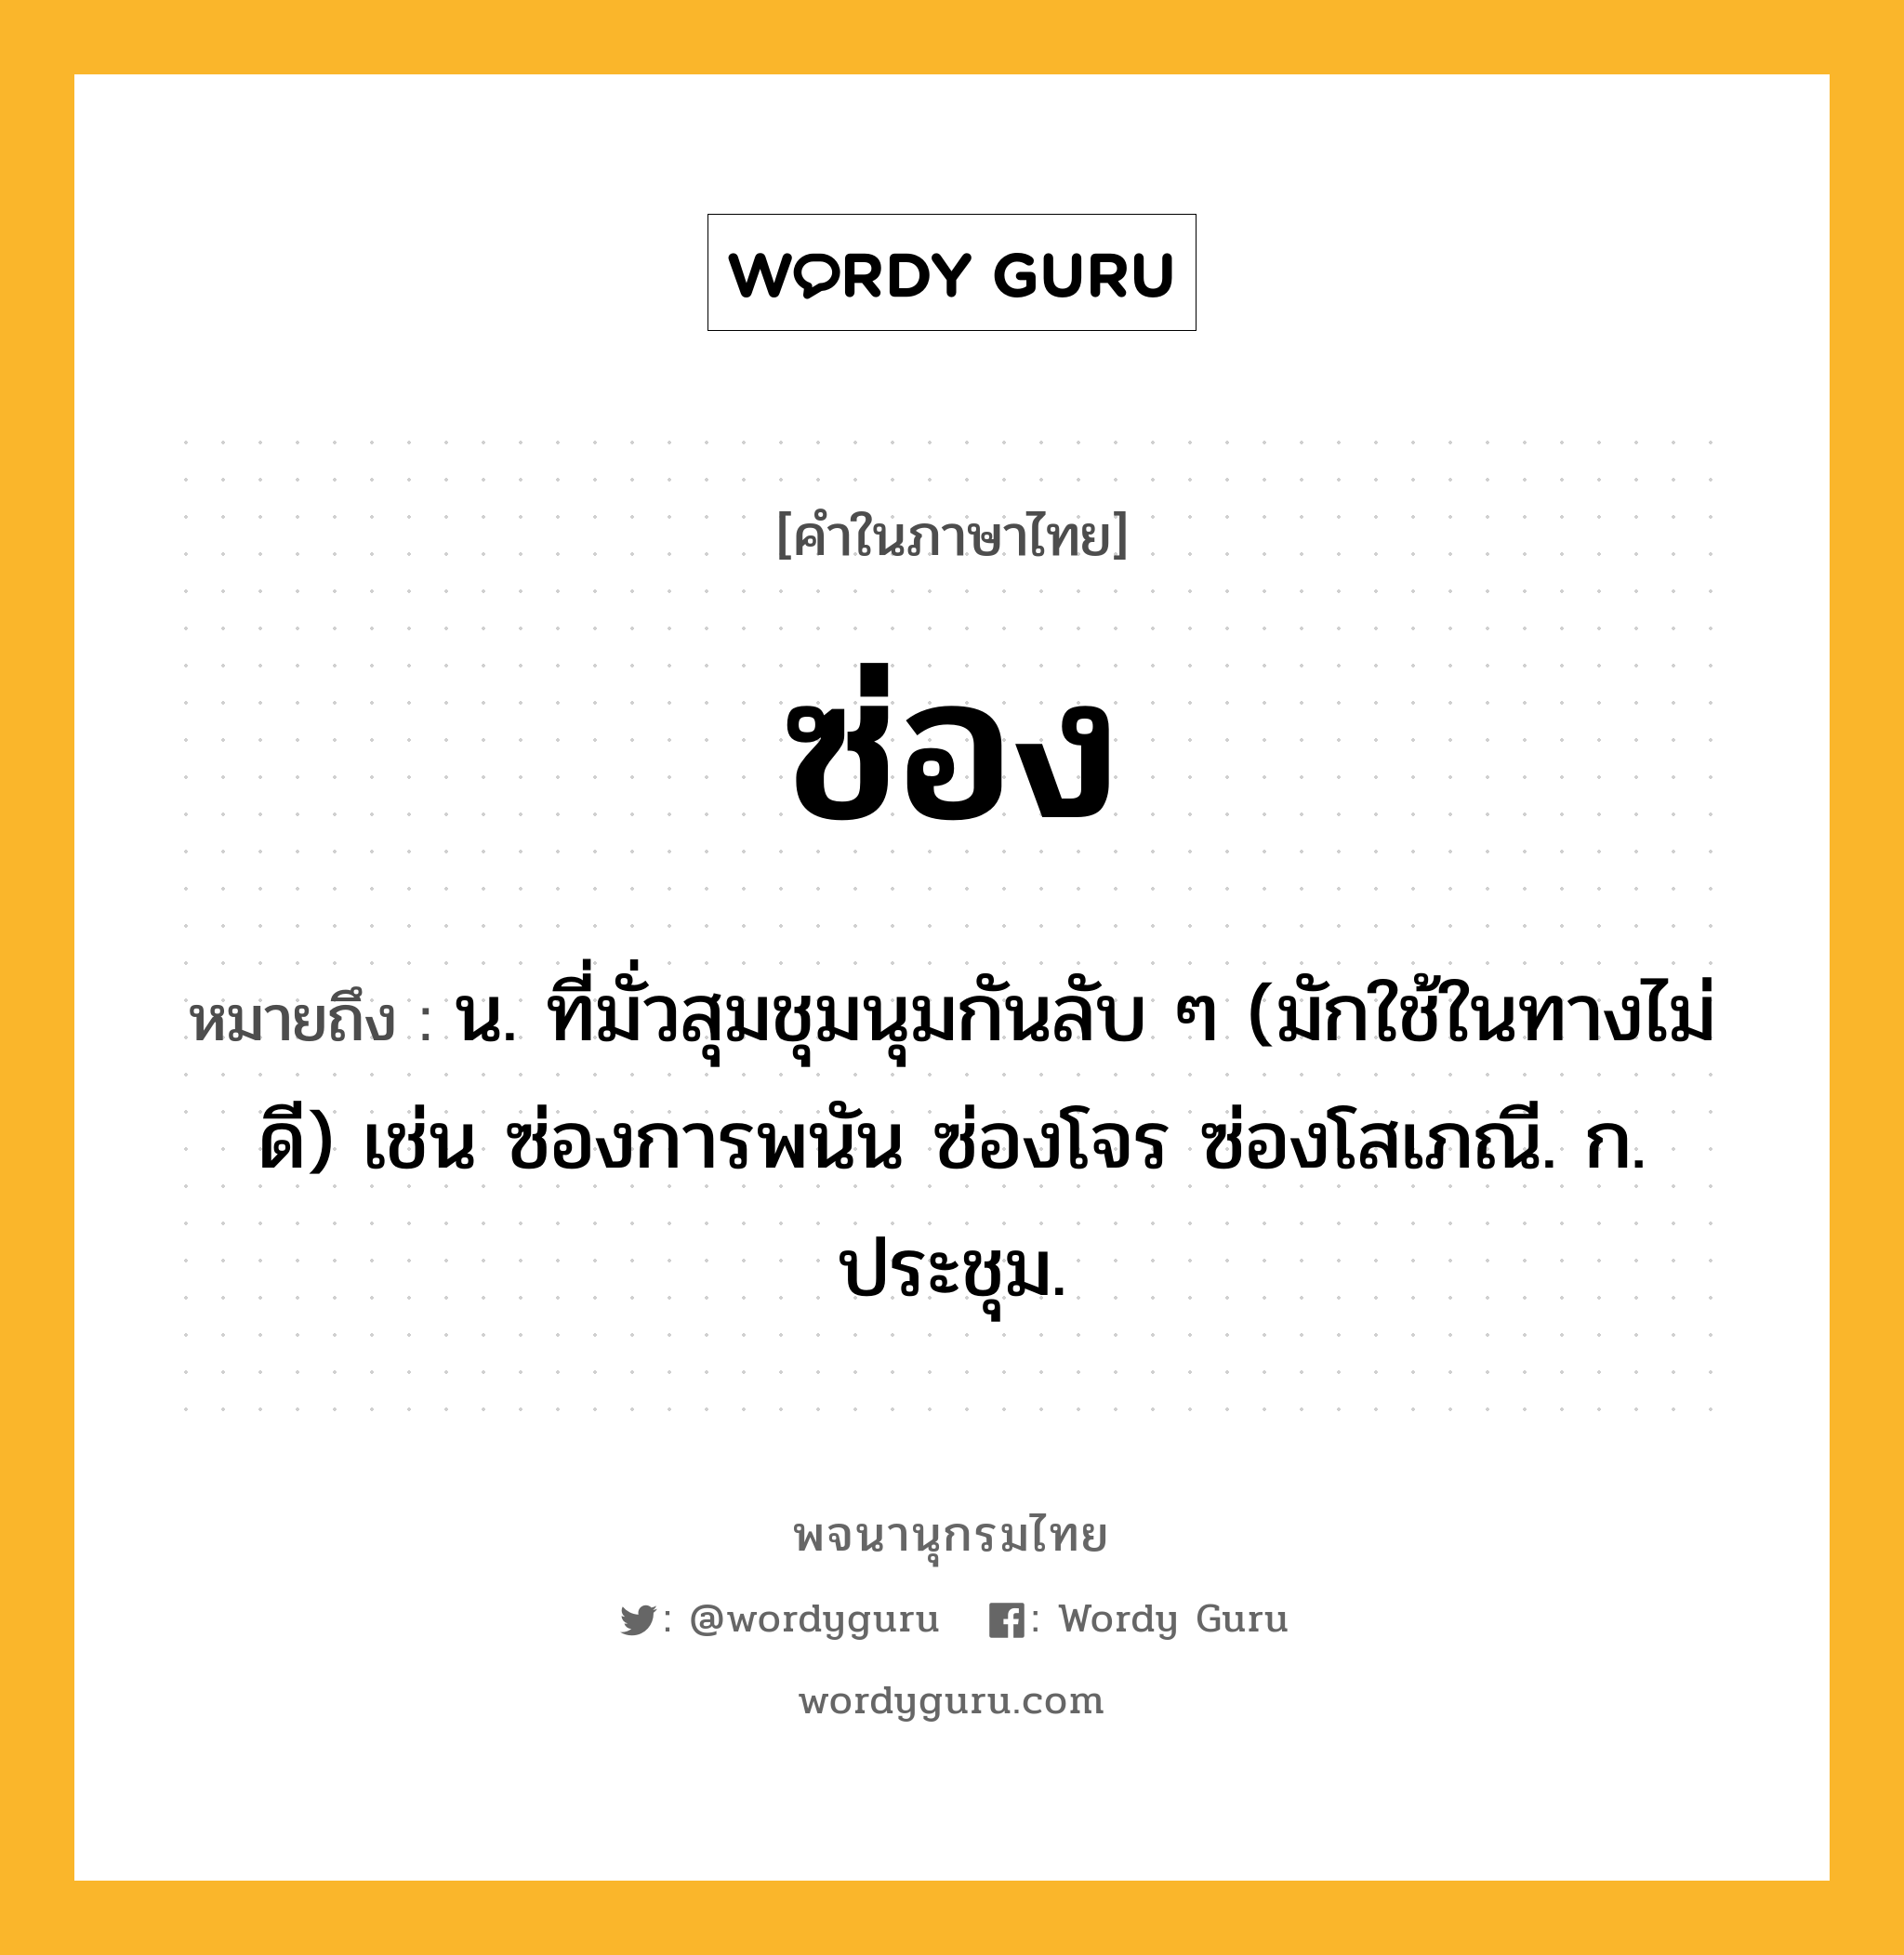 ซ่อง หมายถึงอะไร?, คำในภาษาไทย ซ่อง หมายถึง น. ที่มั่วสุมชุมนุมกันลับ ๆ (มักใช้ในทางไม่ดี) เช่น ซ่องการพนัน ซ่องโจร ซ่องโสเภณี. ก. ประชุม.